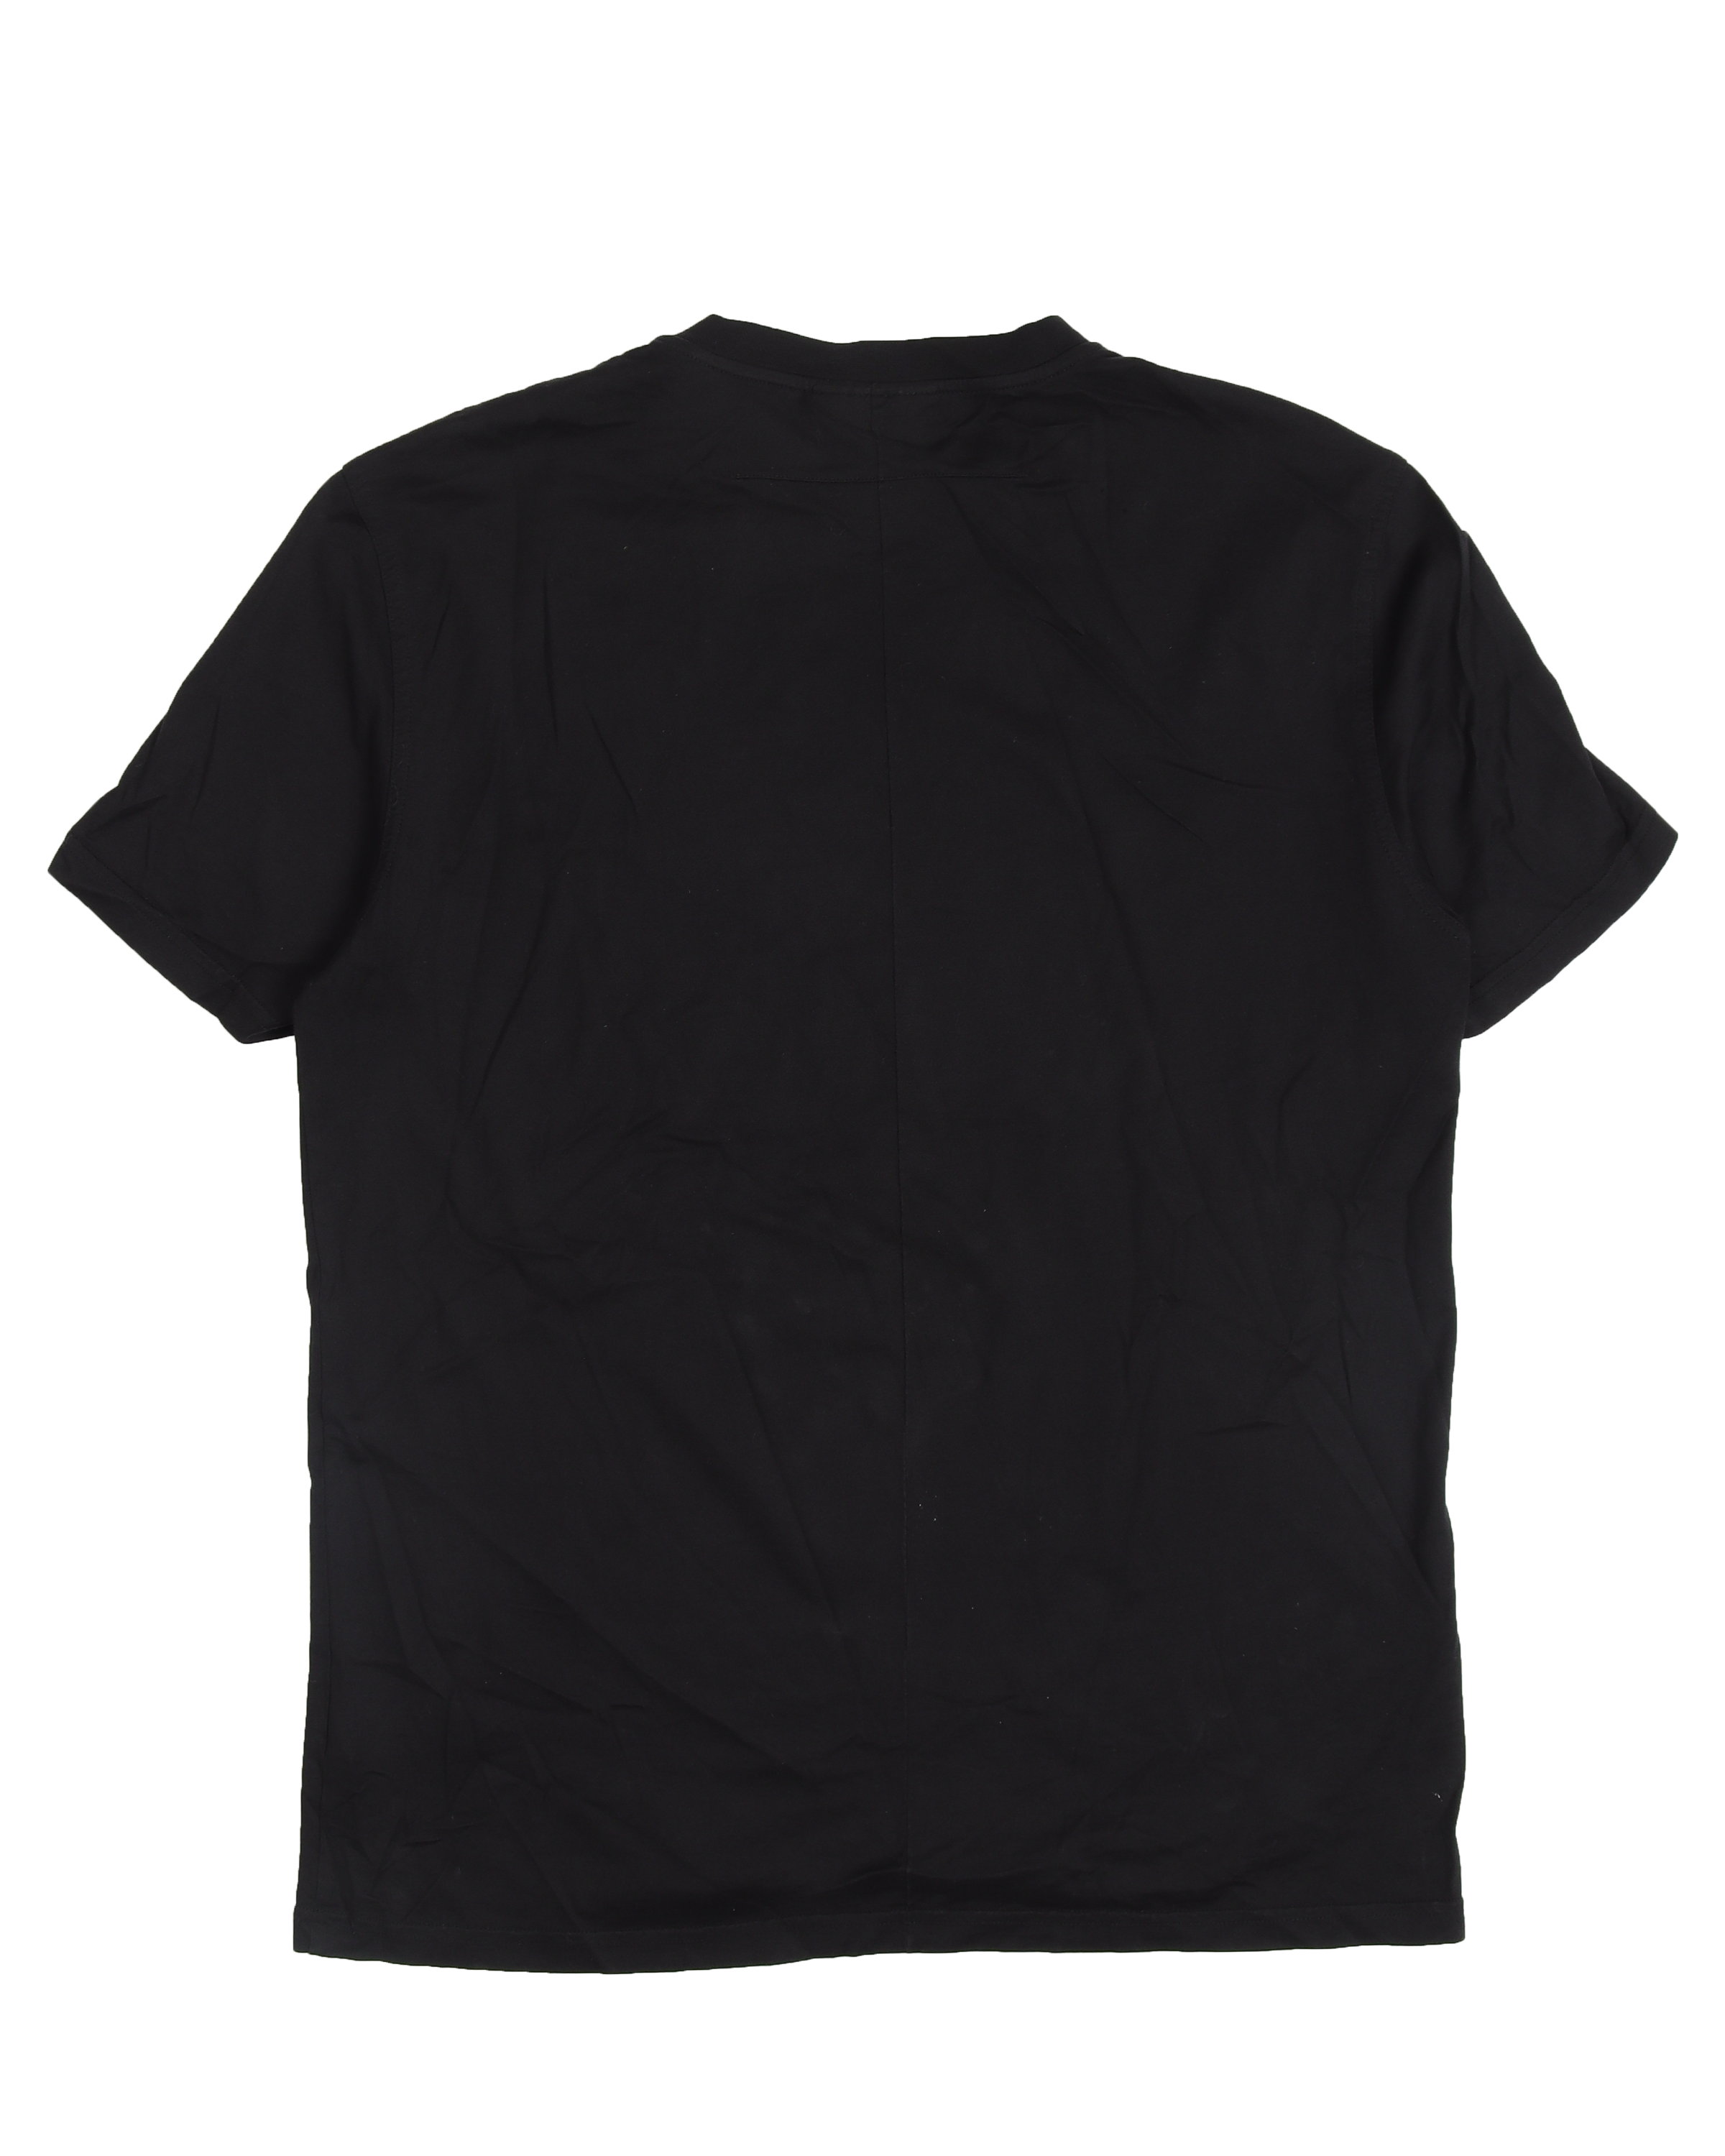 Rottweiler Print T-Shirt